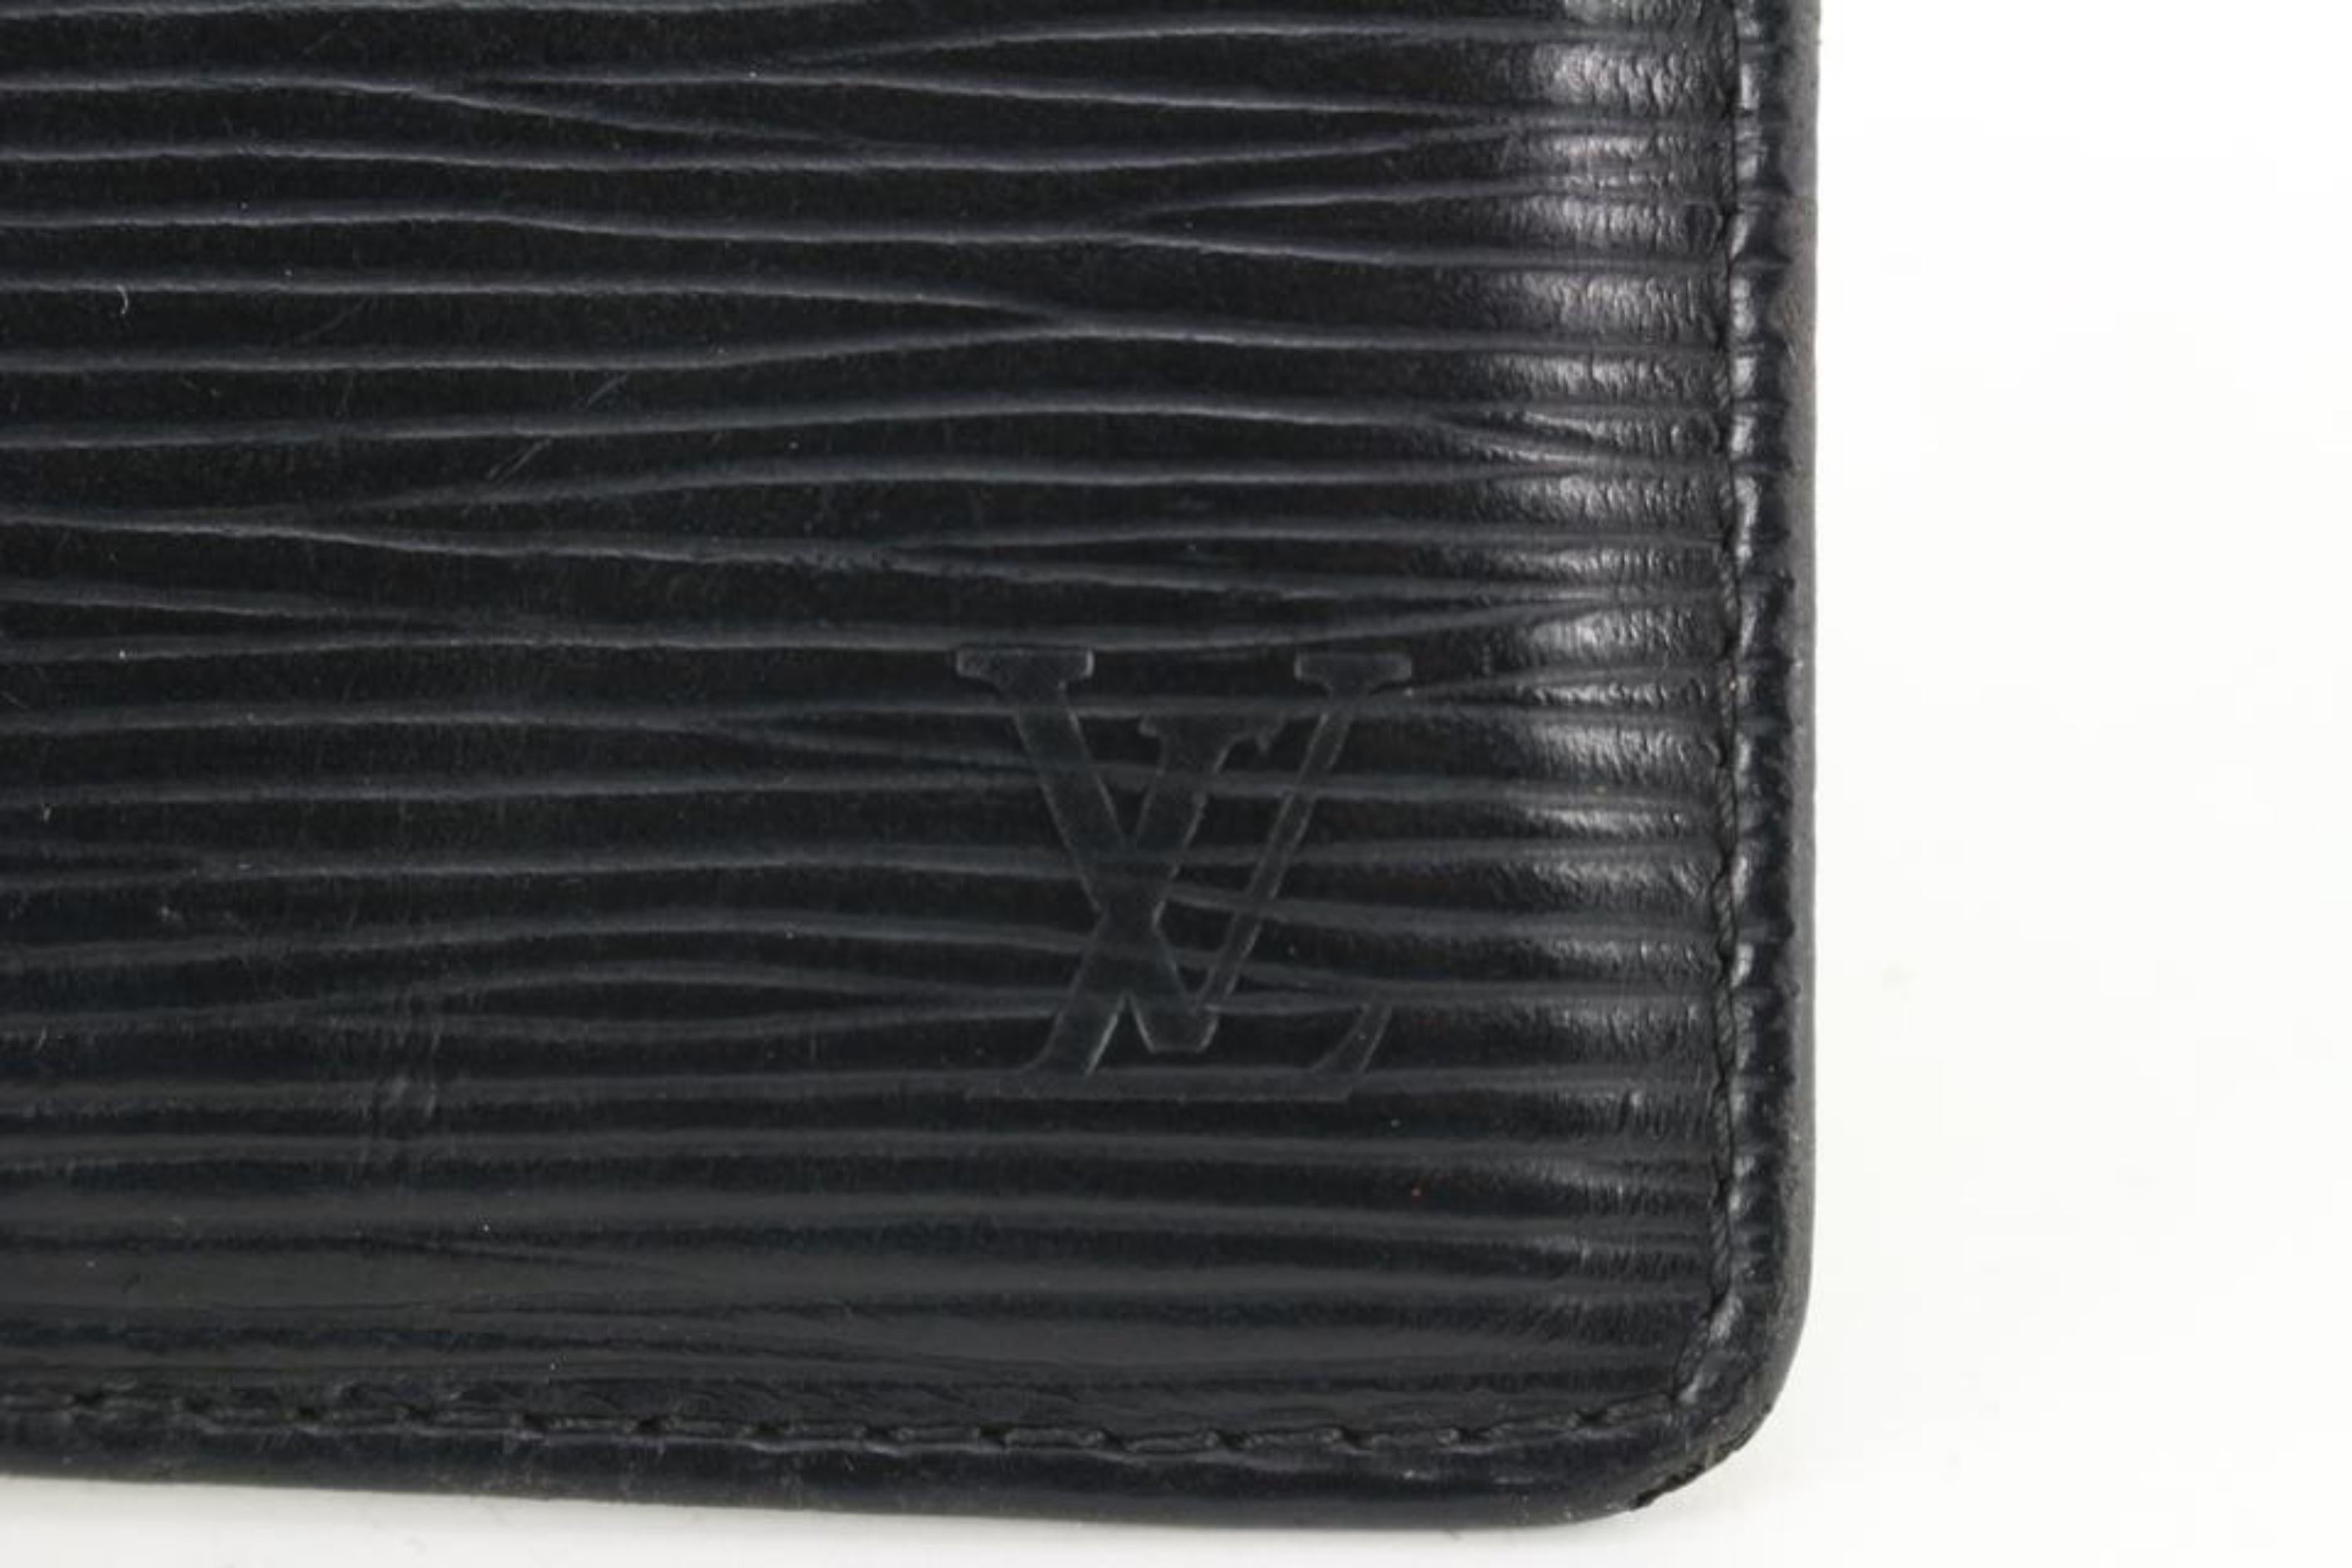 Louis Vuitton Key Pouch, Black